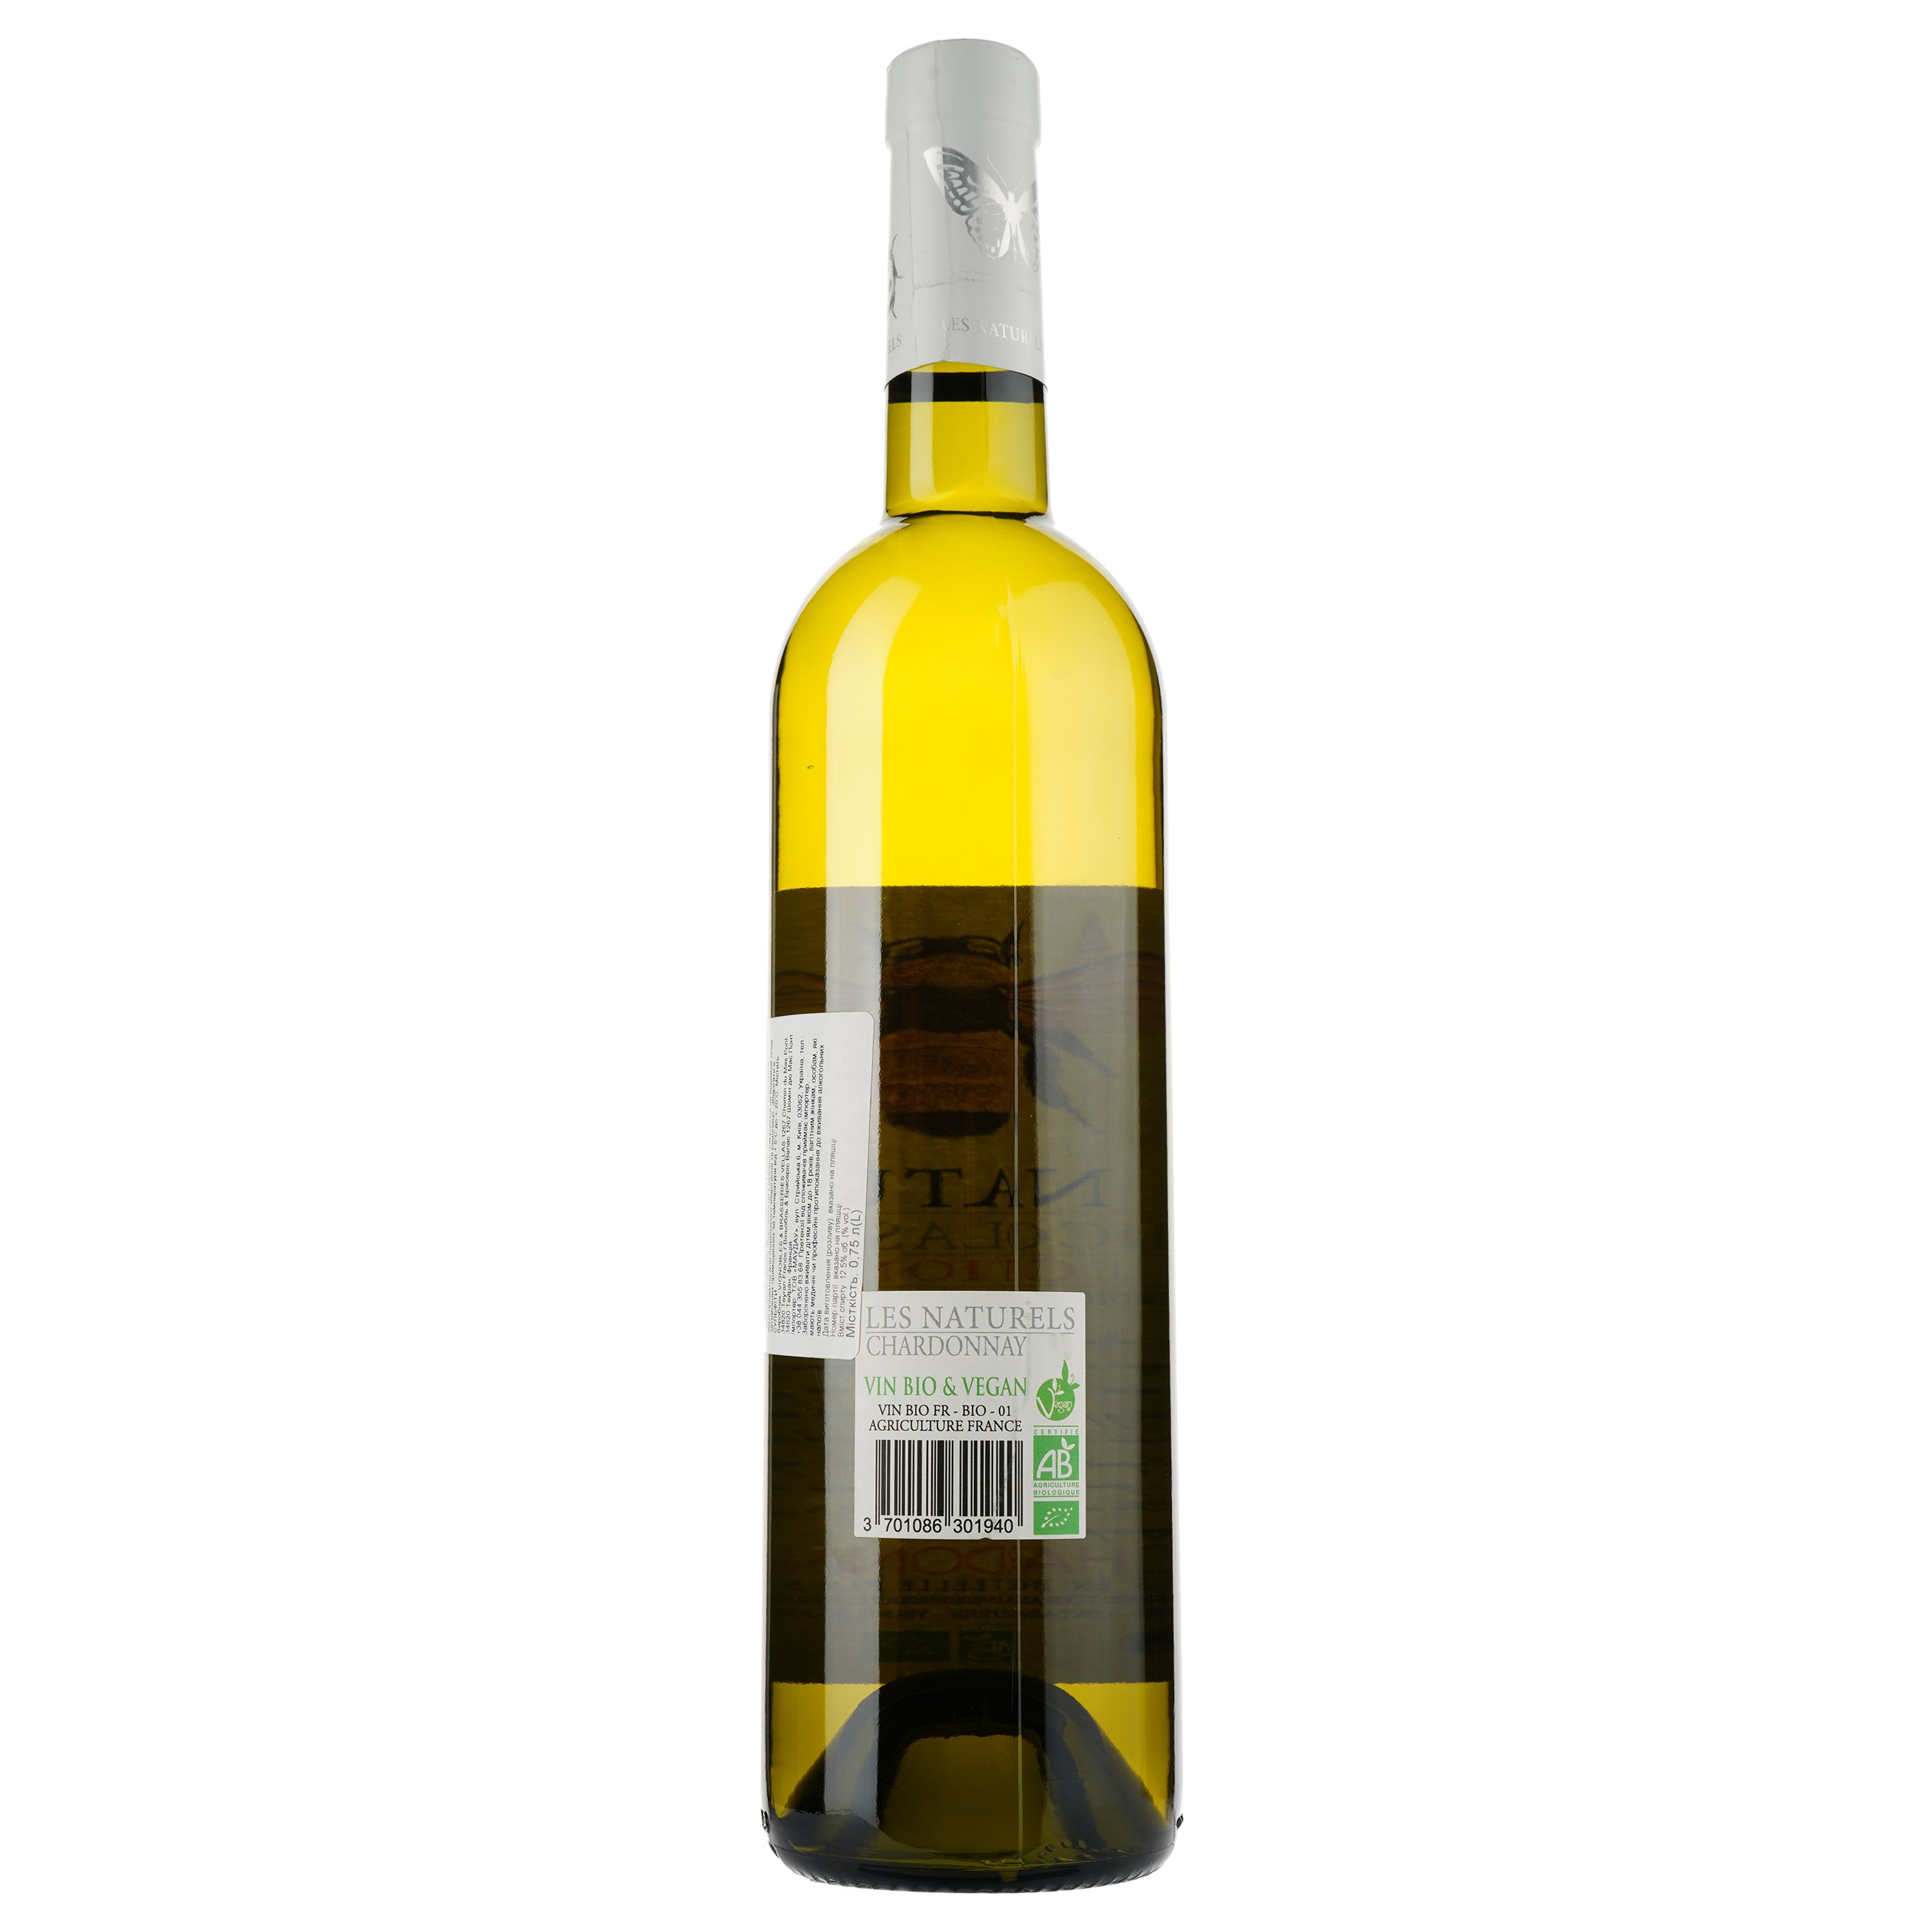 Вино Les Naturels De Nicolas Vellas Chardonnay Bio IGP Pays D'Oc, белое, сухое, 0,75 л - фото 2